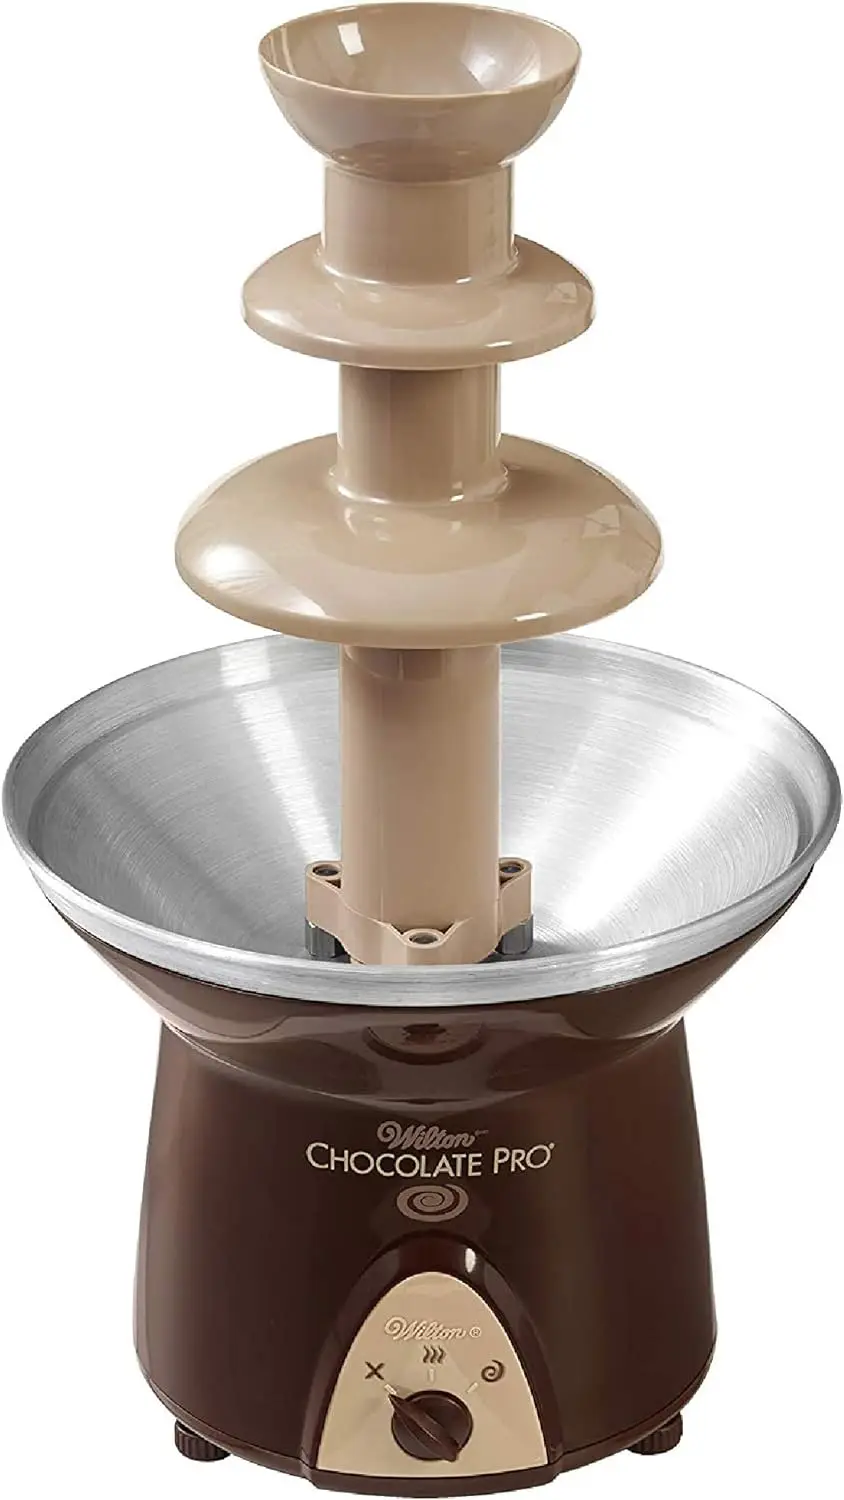 

Шоколадный фонтан Chocolate Pro и фонтан фондю, кофеварки емкостью 4 фунта, кофеварки холодного приготовления эспрессо, Кофеварка